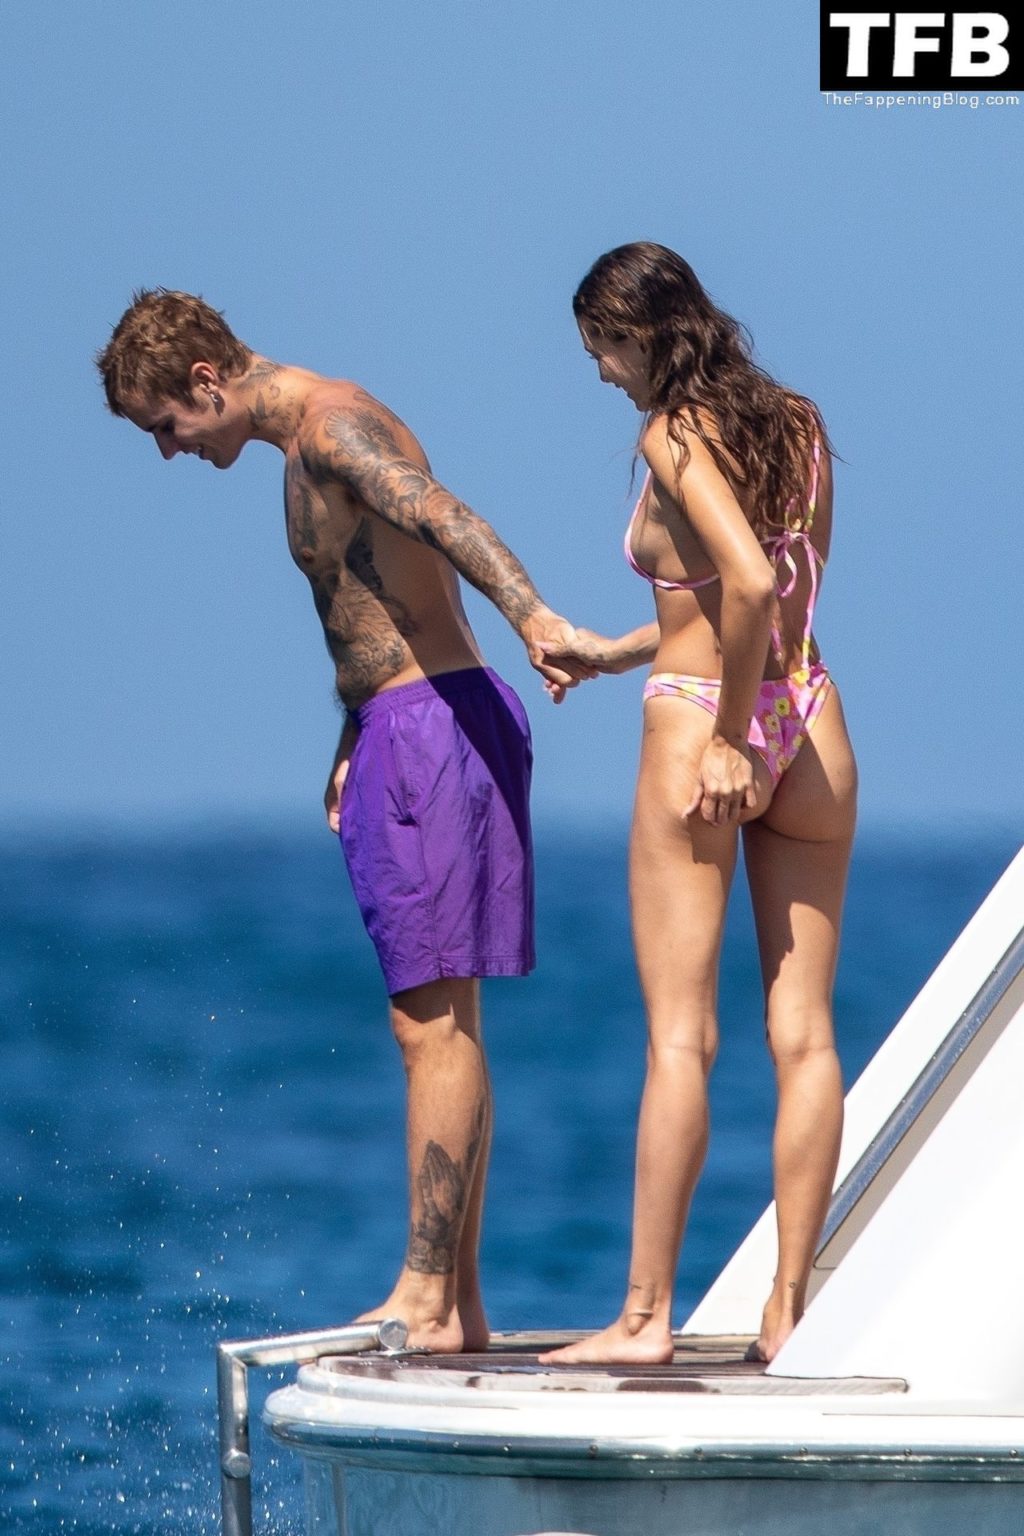 Hailey &amp; Justin Bieber Enjoy Their Romantic Getaway in Cabo San Lucas (34 Photos)